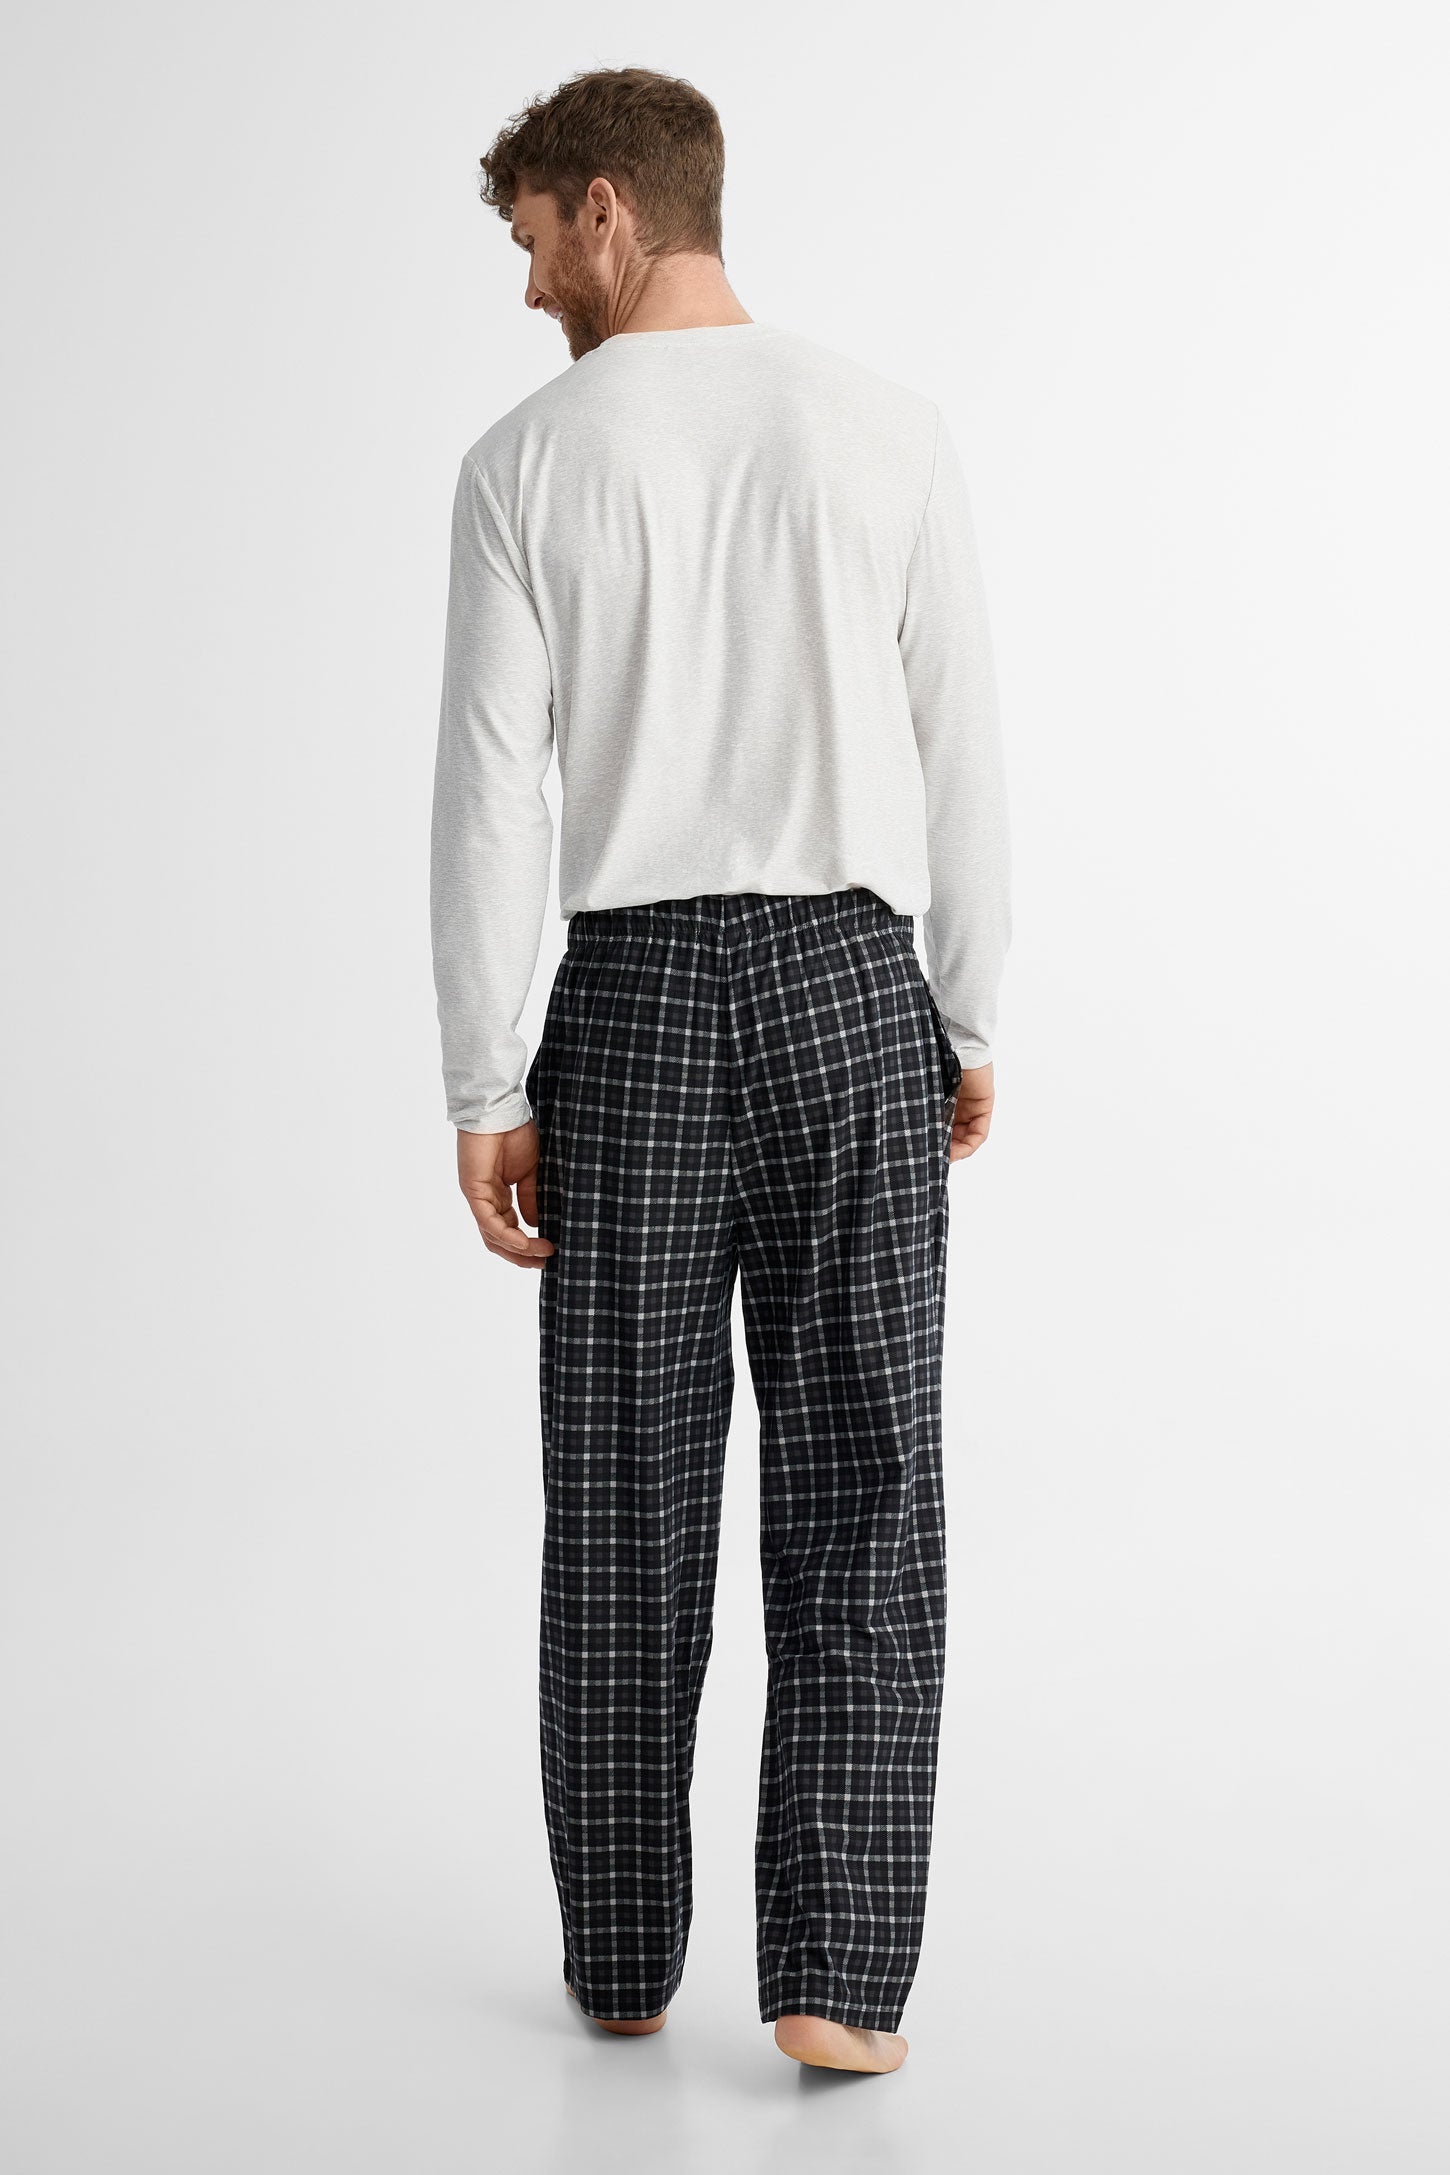 Duos futés, Pantalon pyjama en Moss, 2/40$ - Homme && GRIS MULTI